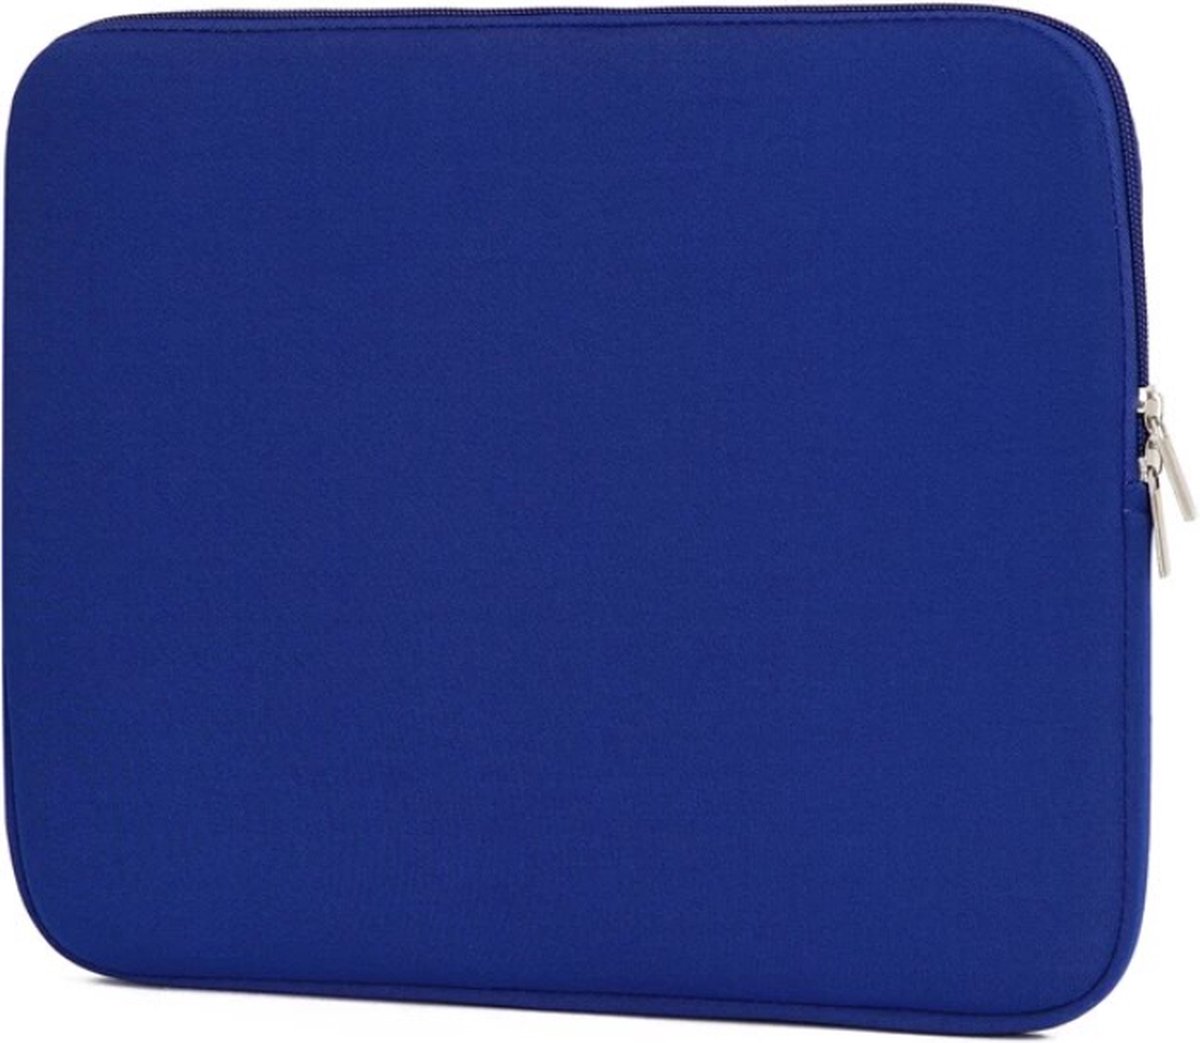 Universele laptopsleeve - 15 inch - Blauw - Geschikt voor alle laptops